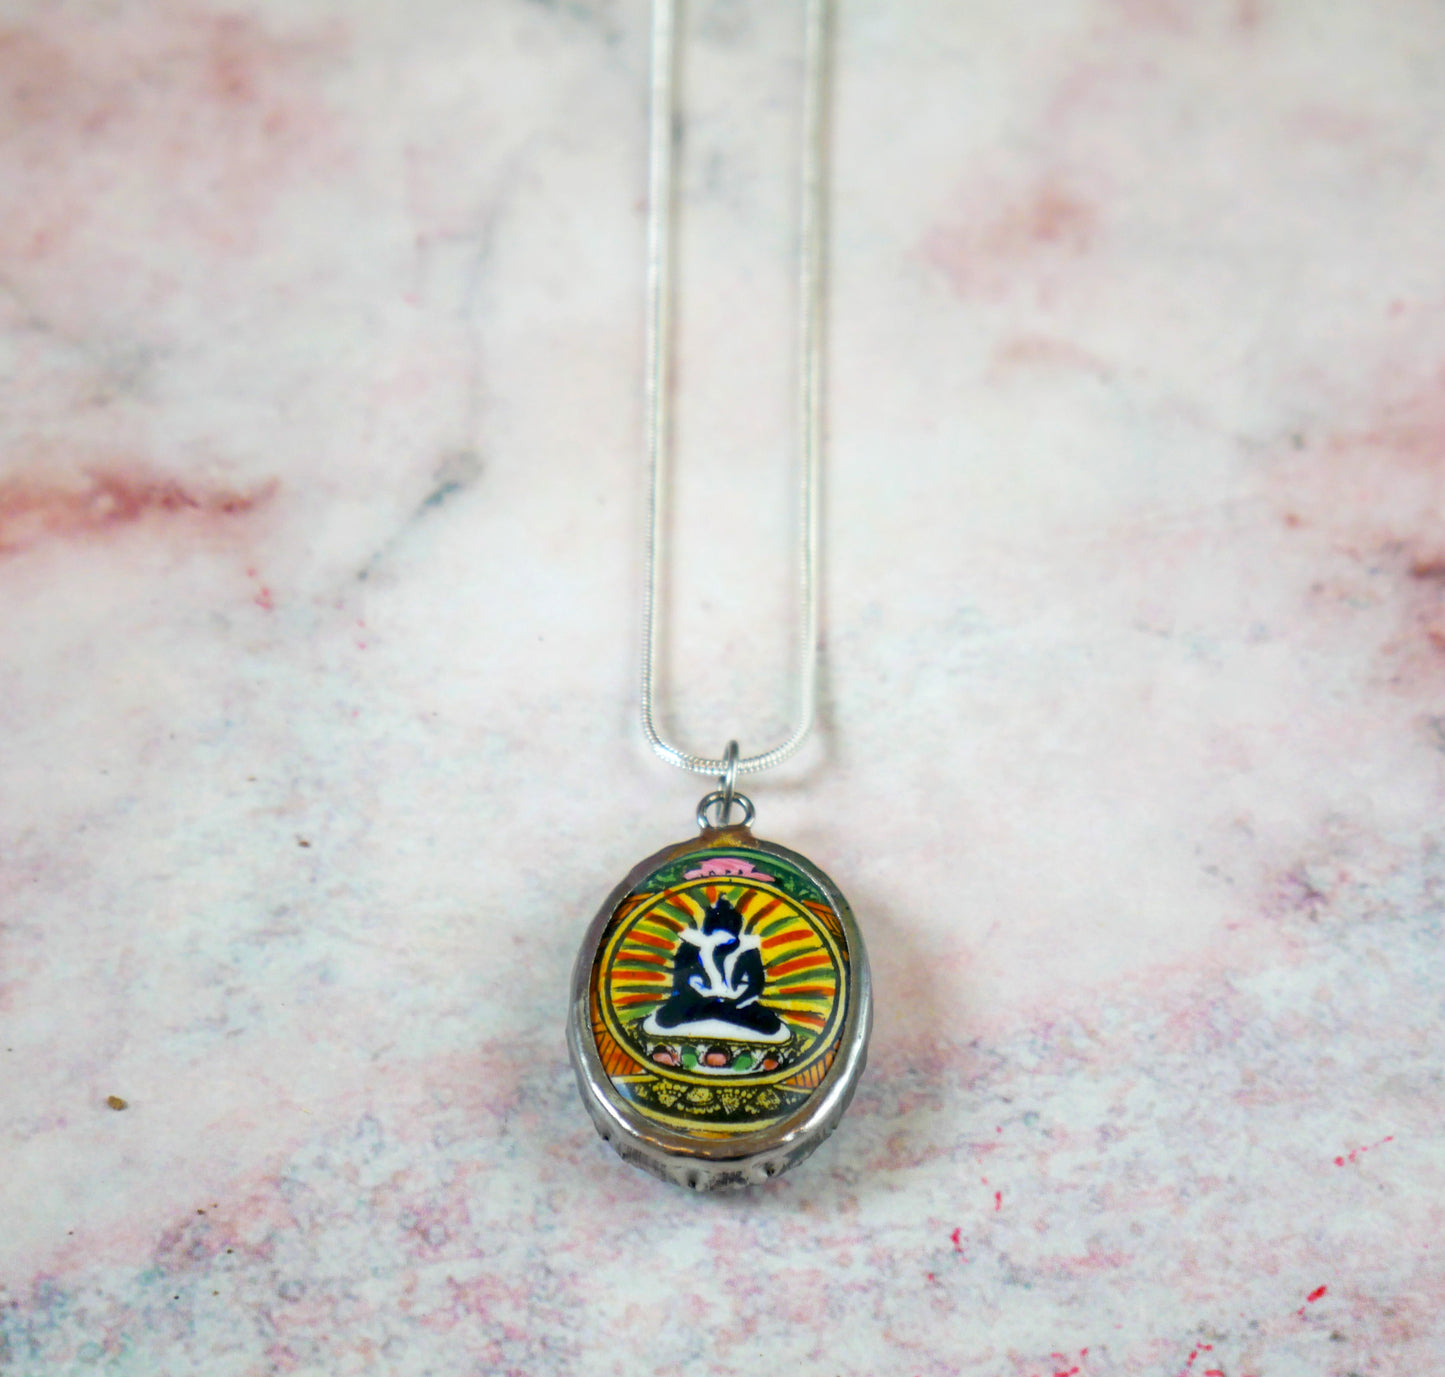 Shiva Shakti Necklace | Yab Yum Buddha Pendant | Buddhist and Hindu Jewelry Gift